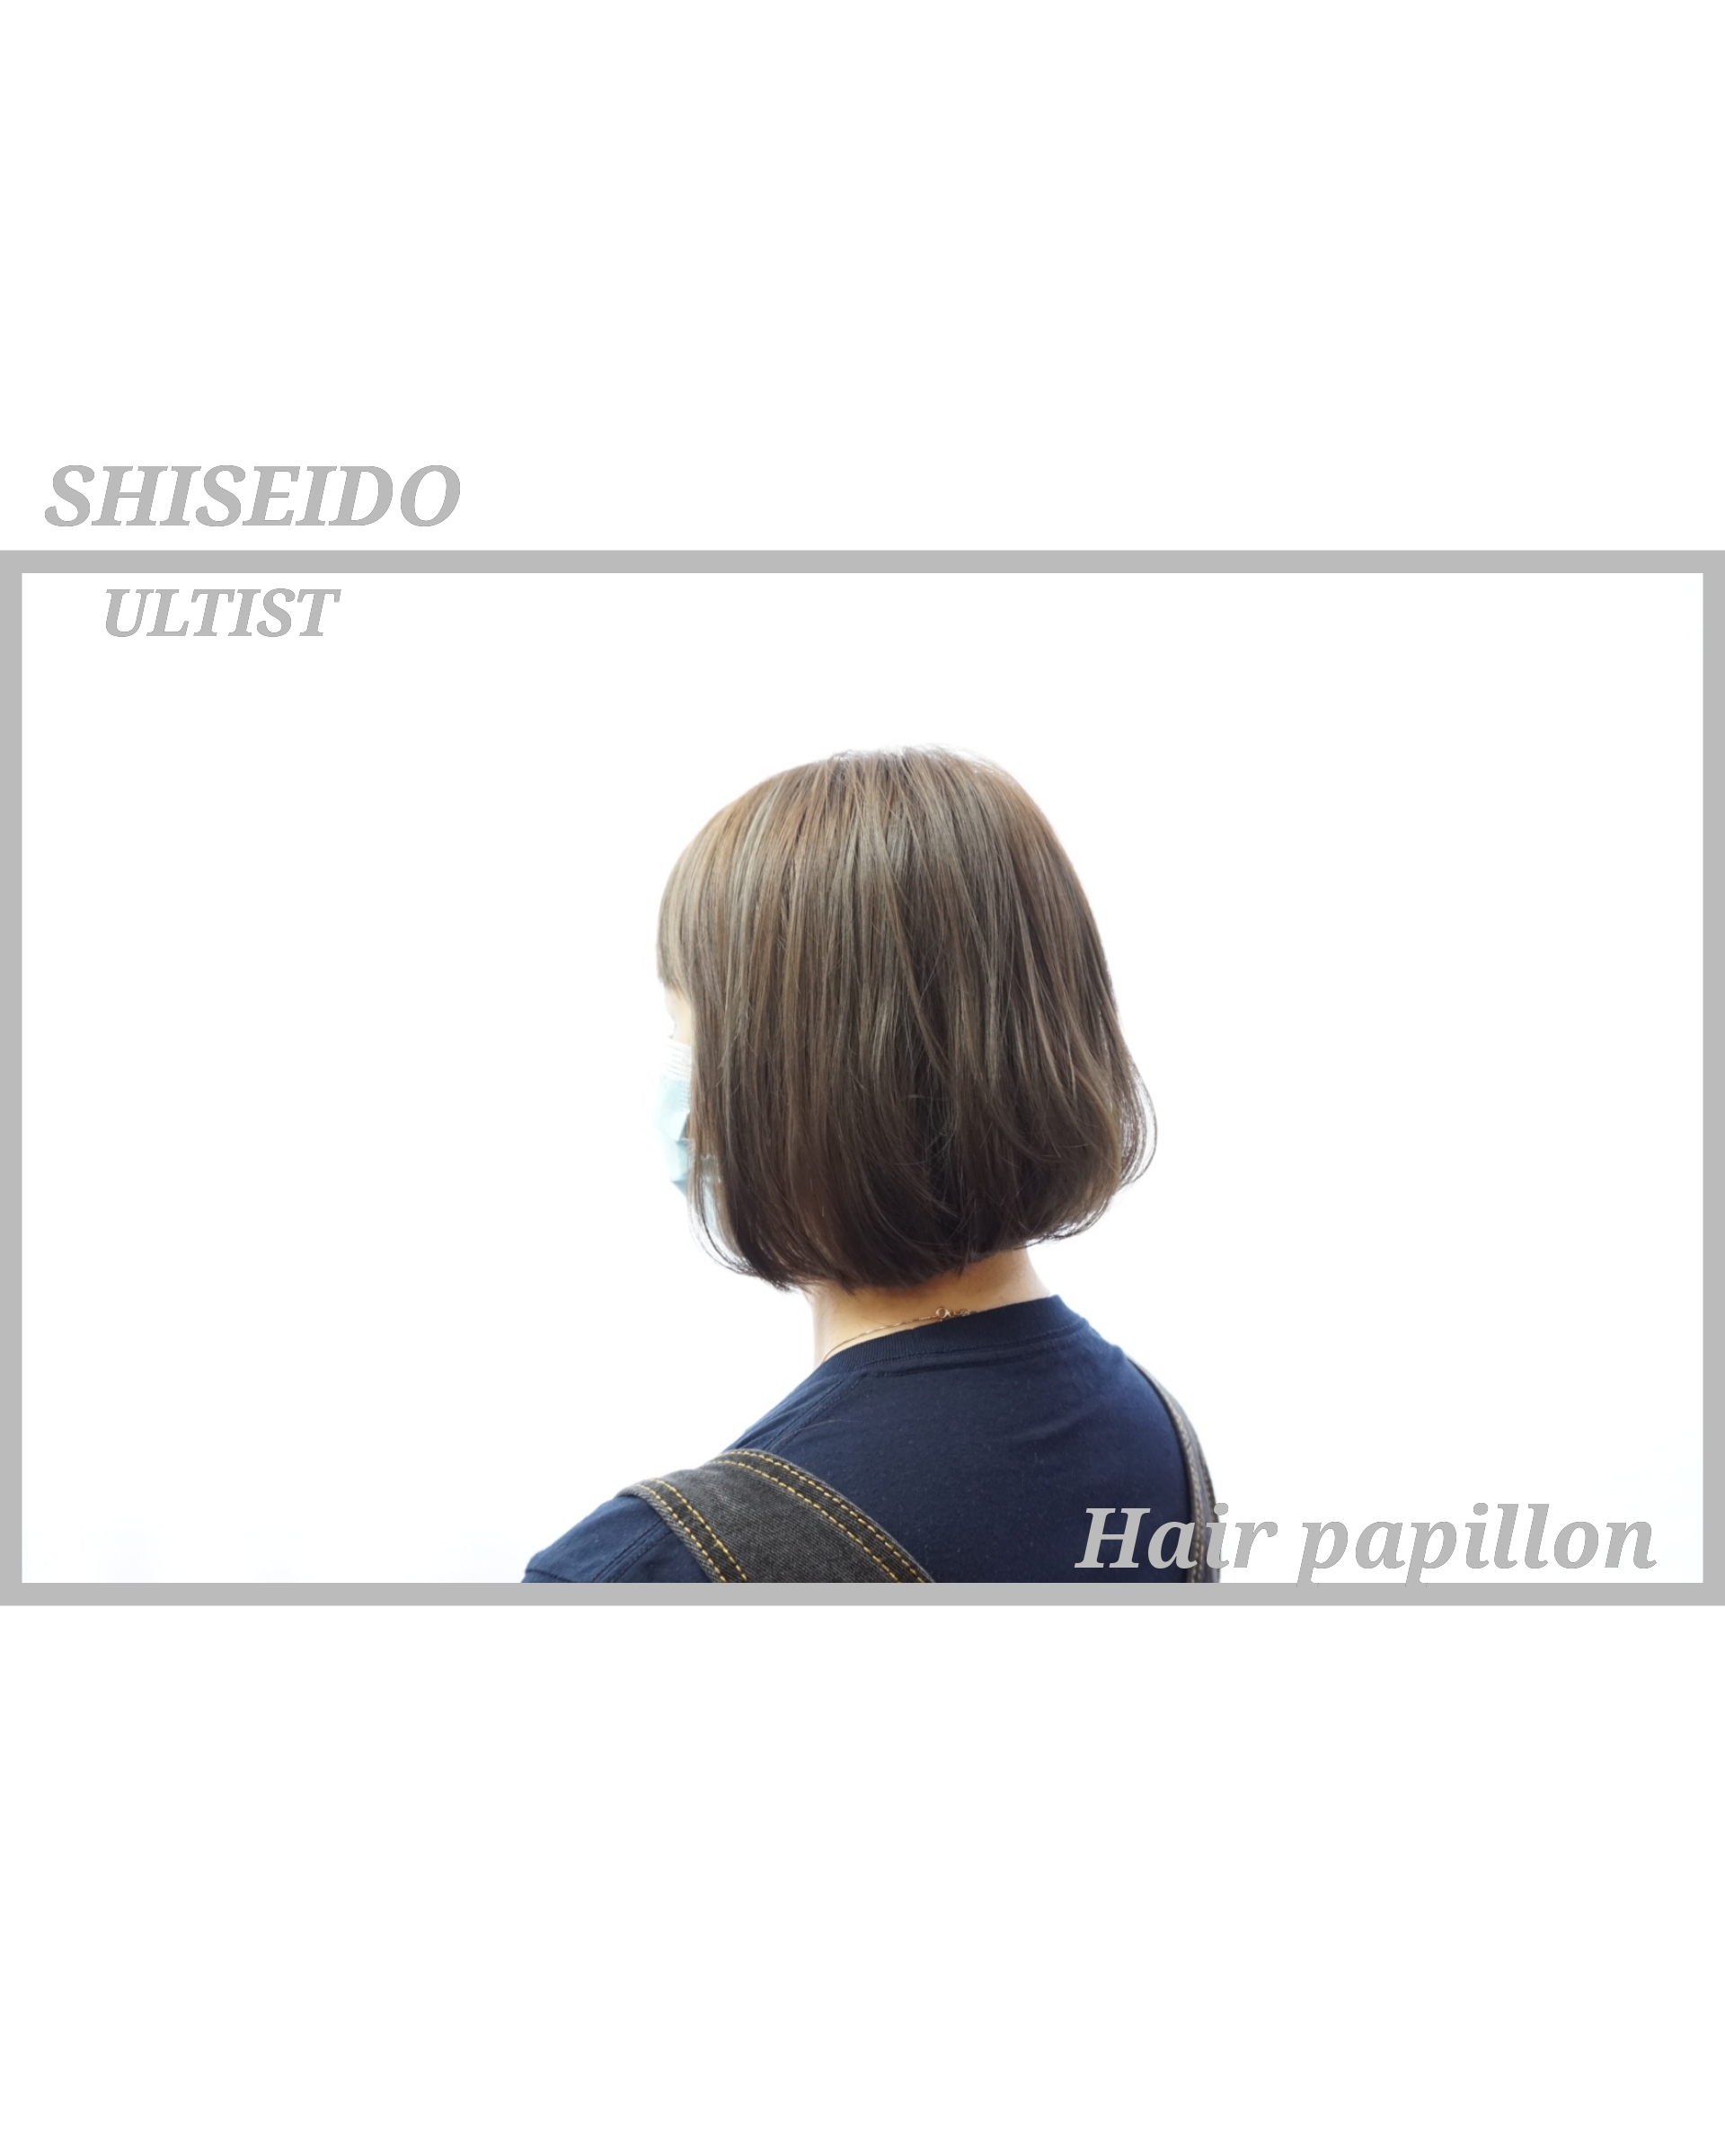 jack wong髮型作品: shiseido ultist